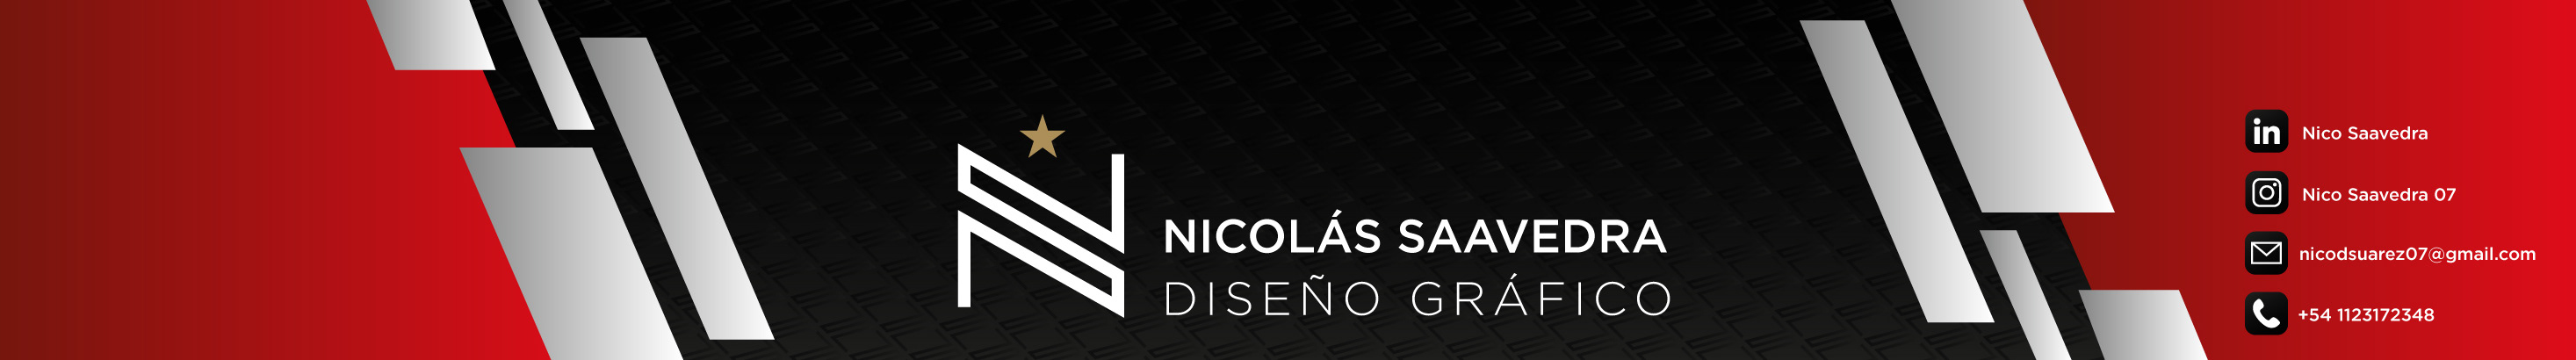 Banner del profilo di Nico Saavedra 07